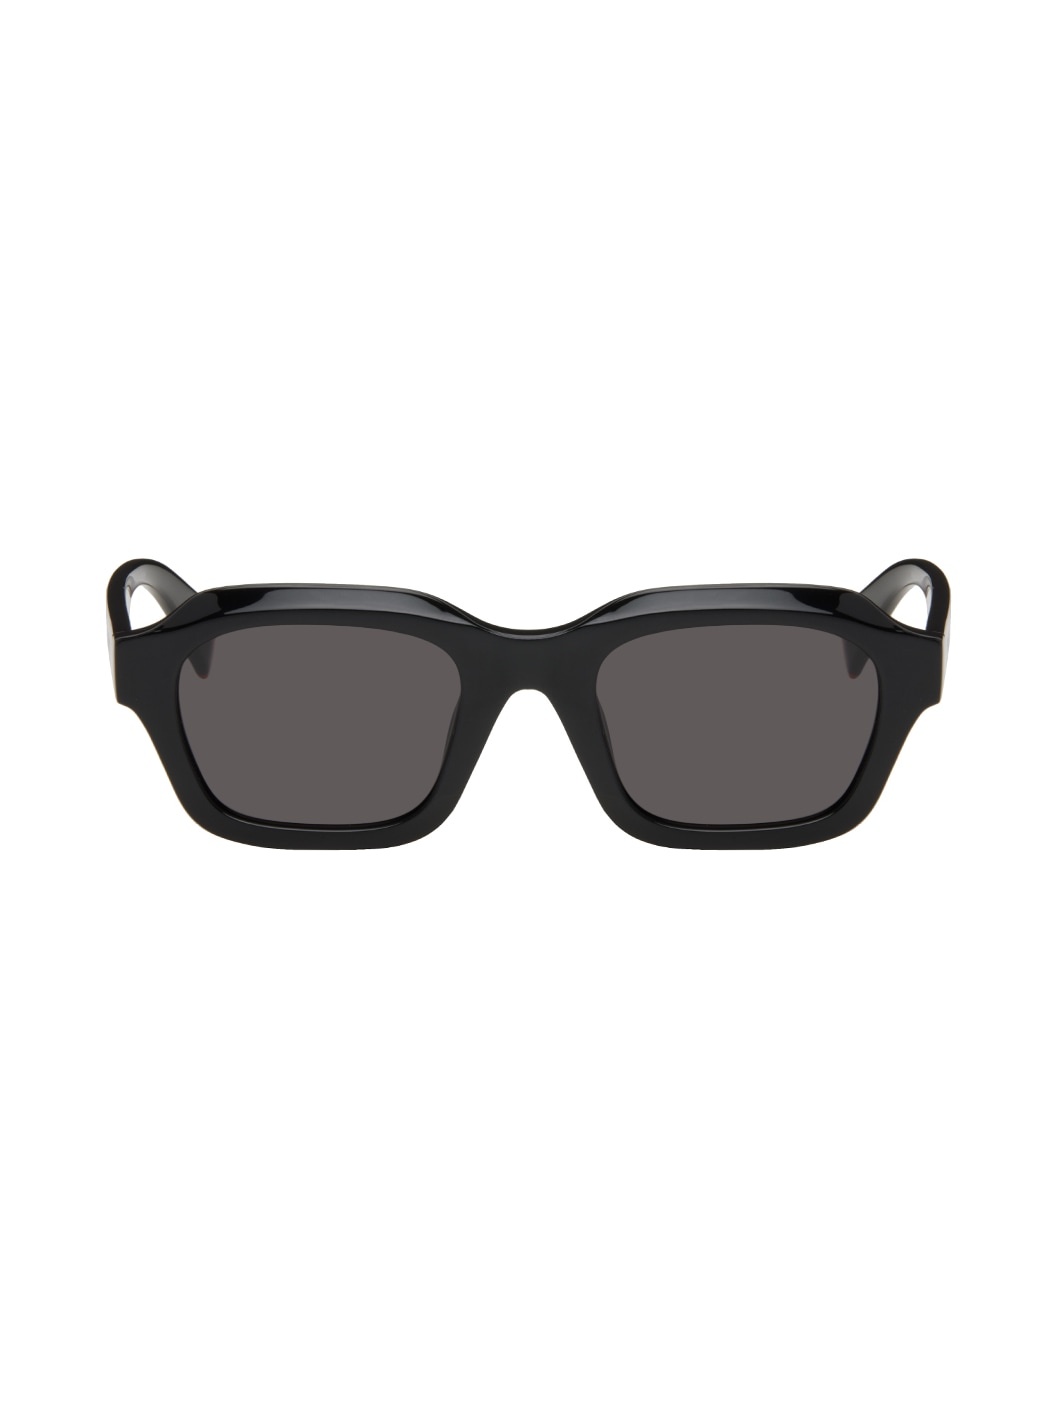 Black Kenzo Paris Square Sunglasses - 1